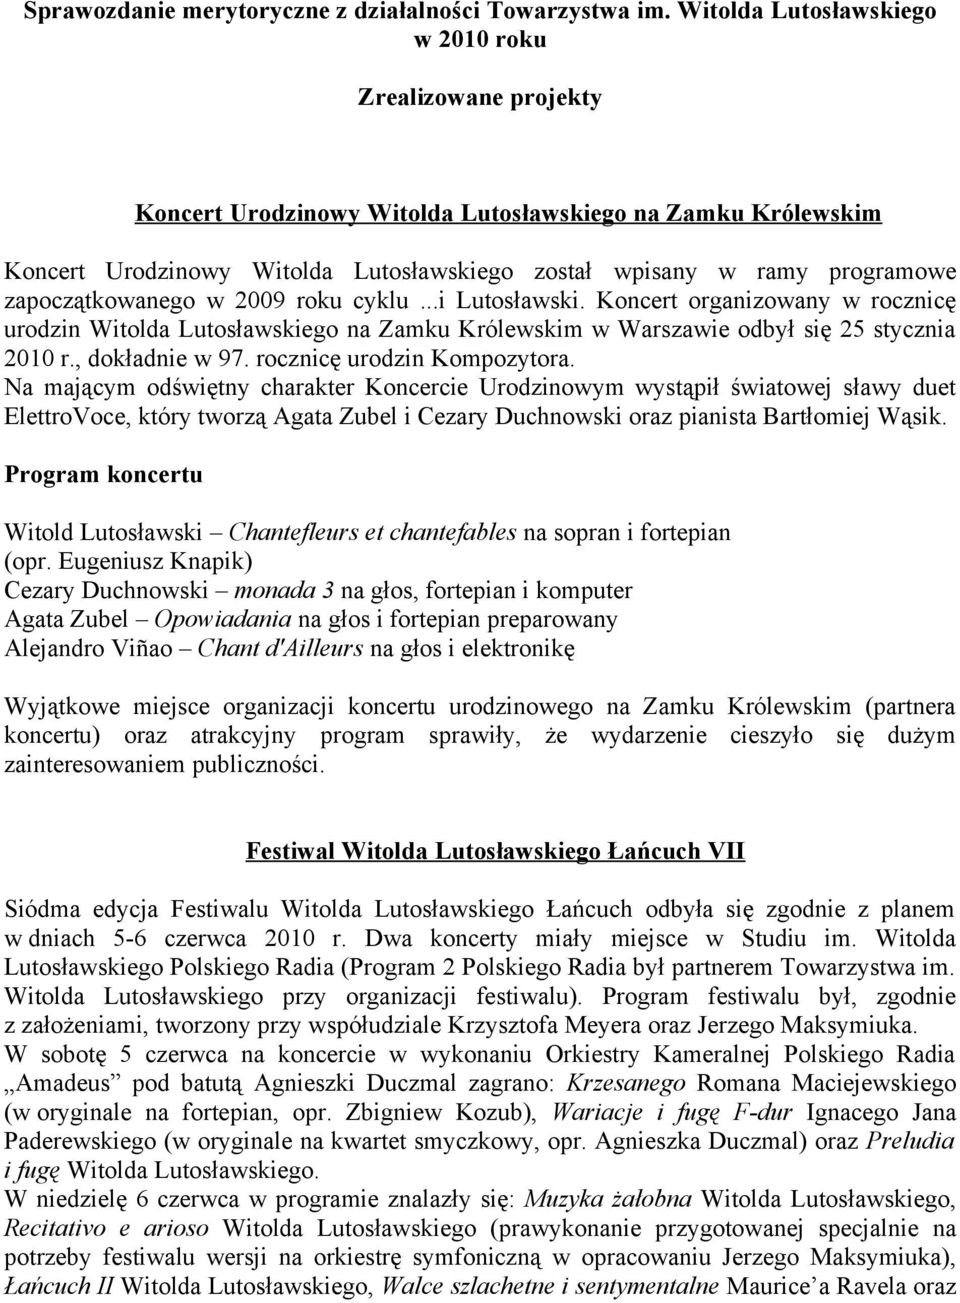 zapoczątkowanego w 2009 roku cyklu...i Lutosławski. Koncert organizowany w rocznicę urodzin Witolda Lutosławskiego na Zamku Królewskim w Warszawie odbył się 25 stycznia 2010 r., dokładnie w 97.